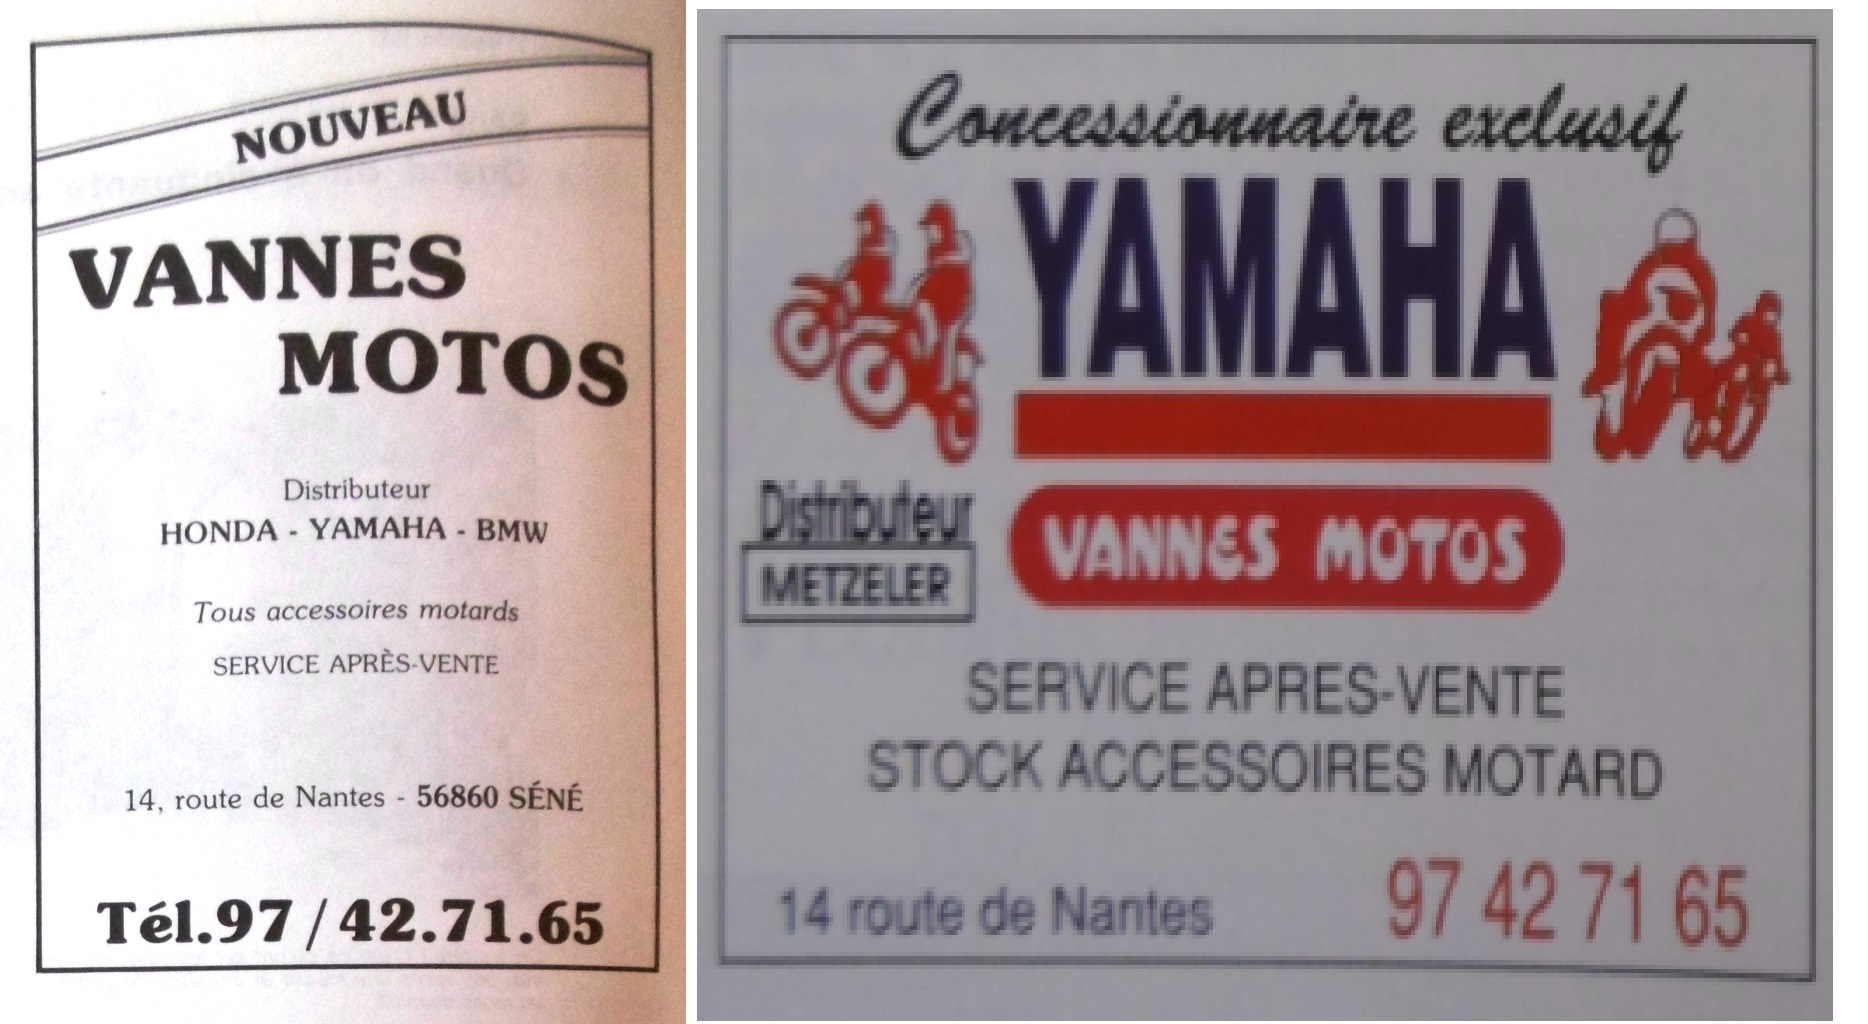 1983 1991 Vannes Moto